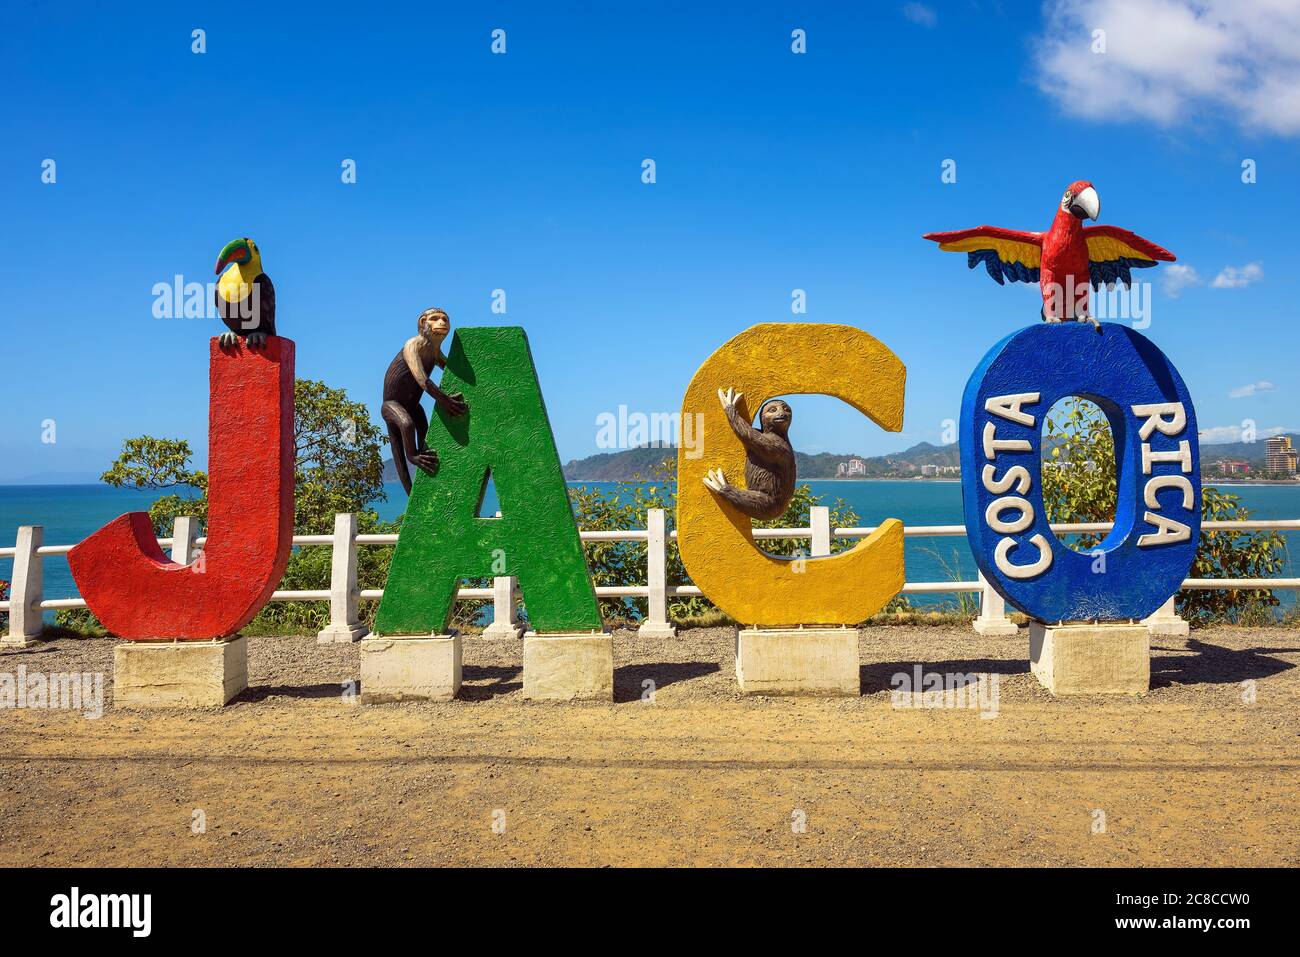 Jaco, Costa Rica - 14 janvier 2020: Entrée colorée signe pour la ville de Jaco au Costa Rica. Banque D'Images